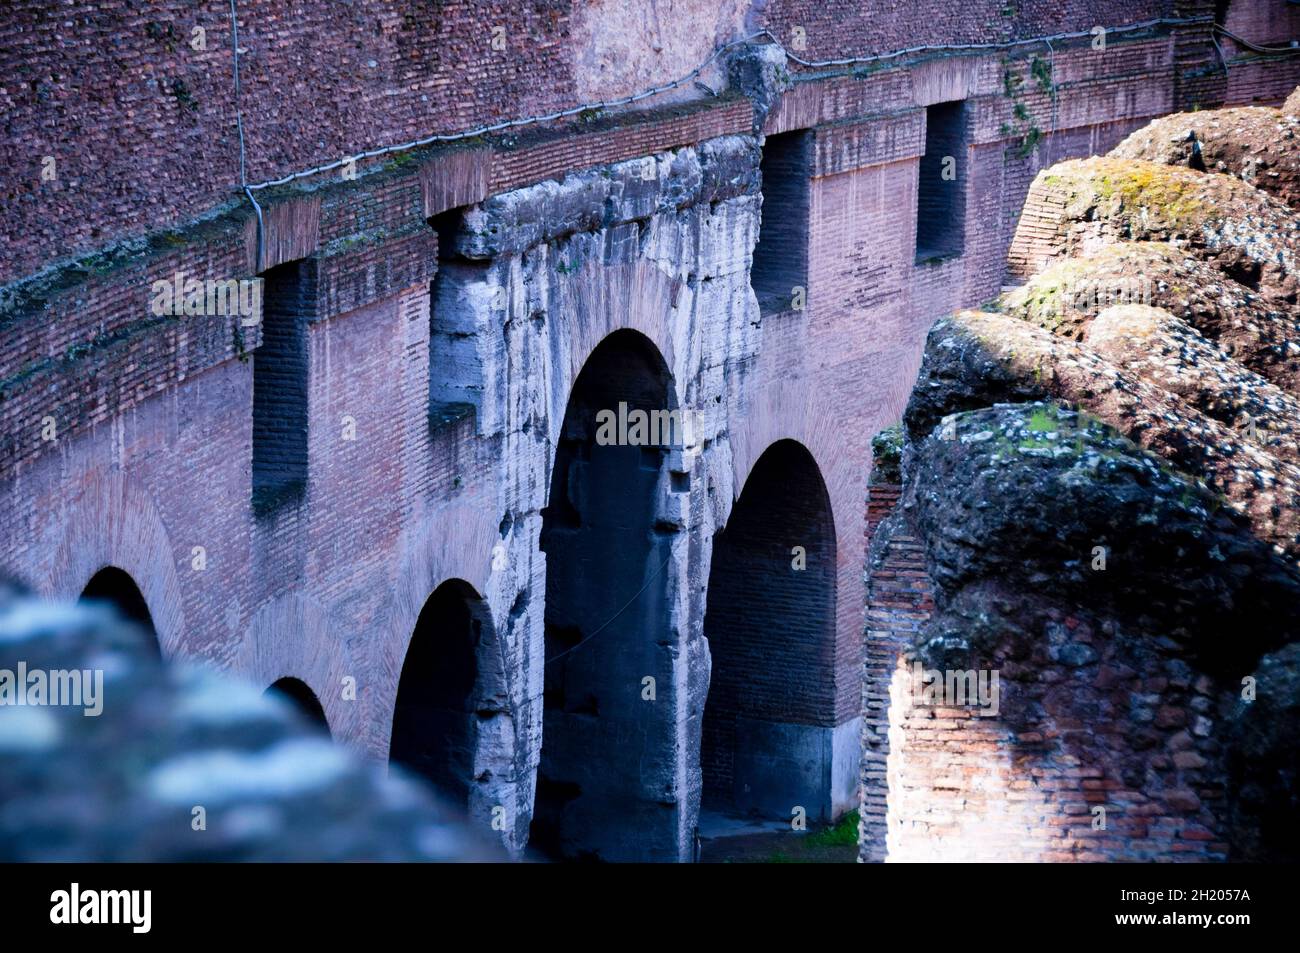 Travertine limestone and brick-faced concrete of the Roman Colosseum in Rome, Italy. Stock Photo